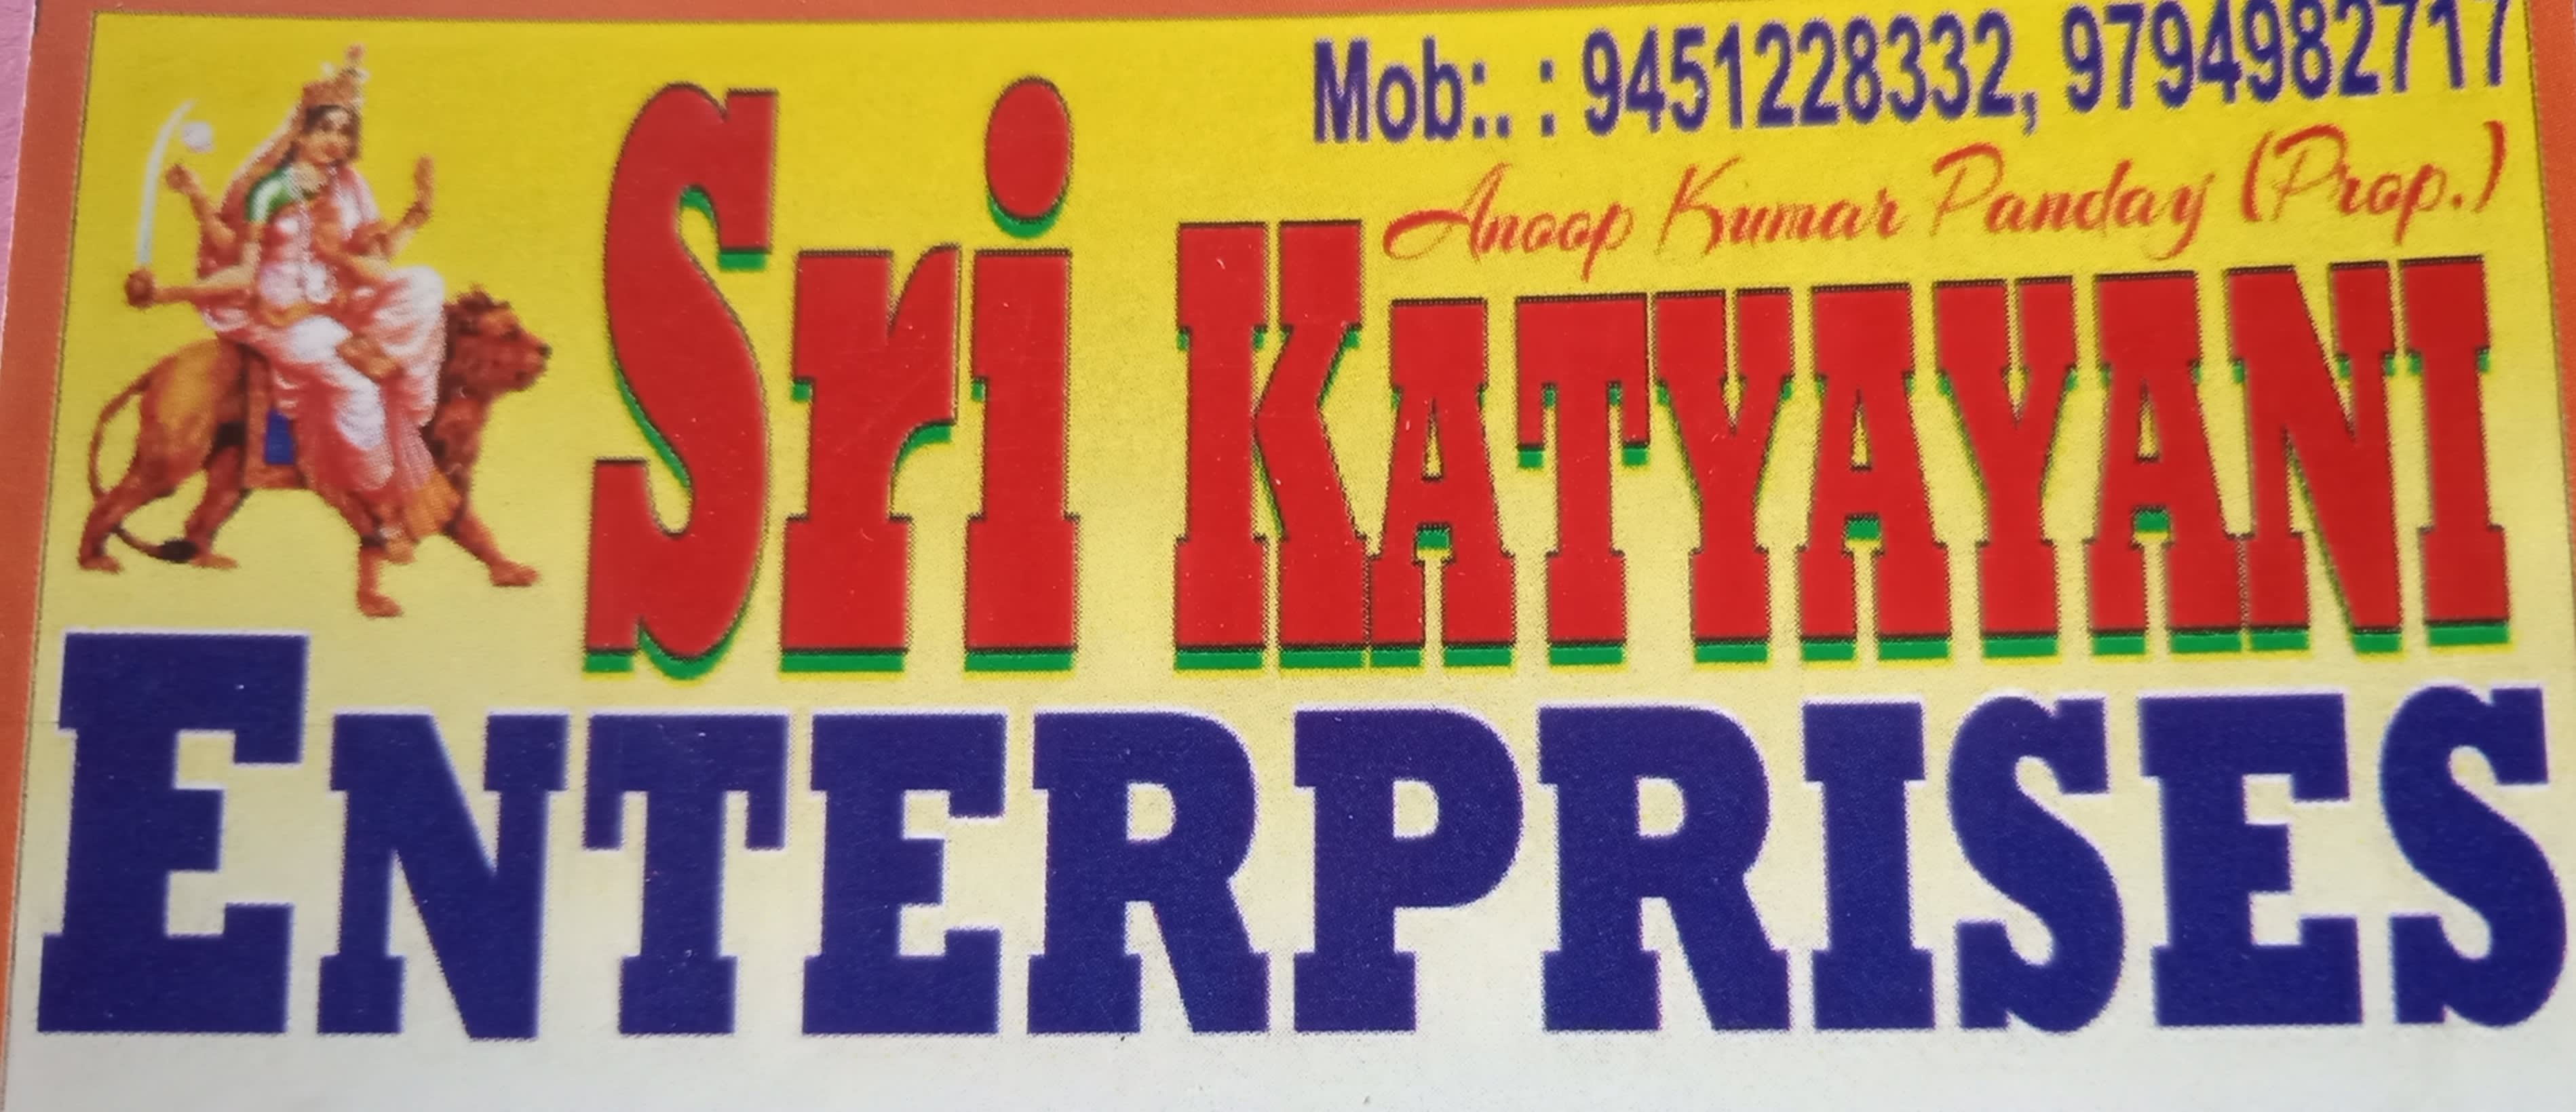 Sri Katyayani Enterprises